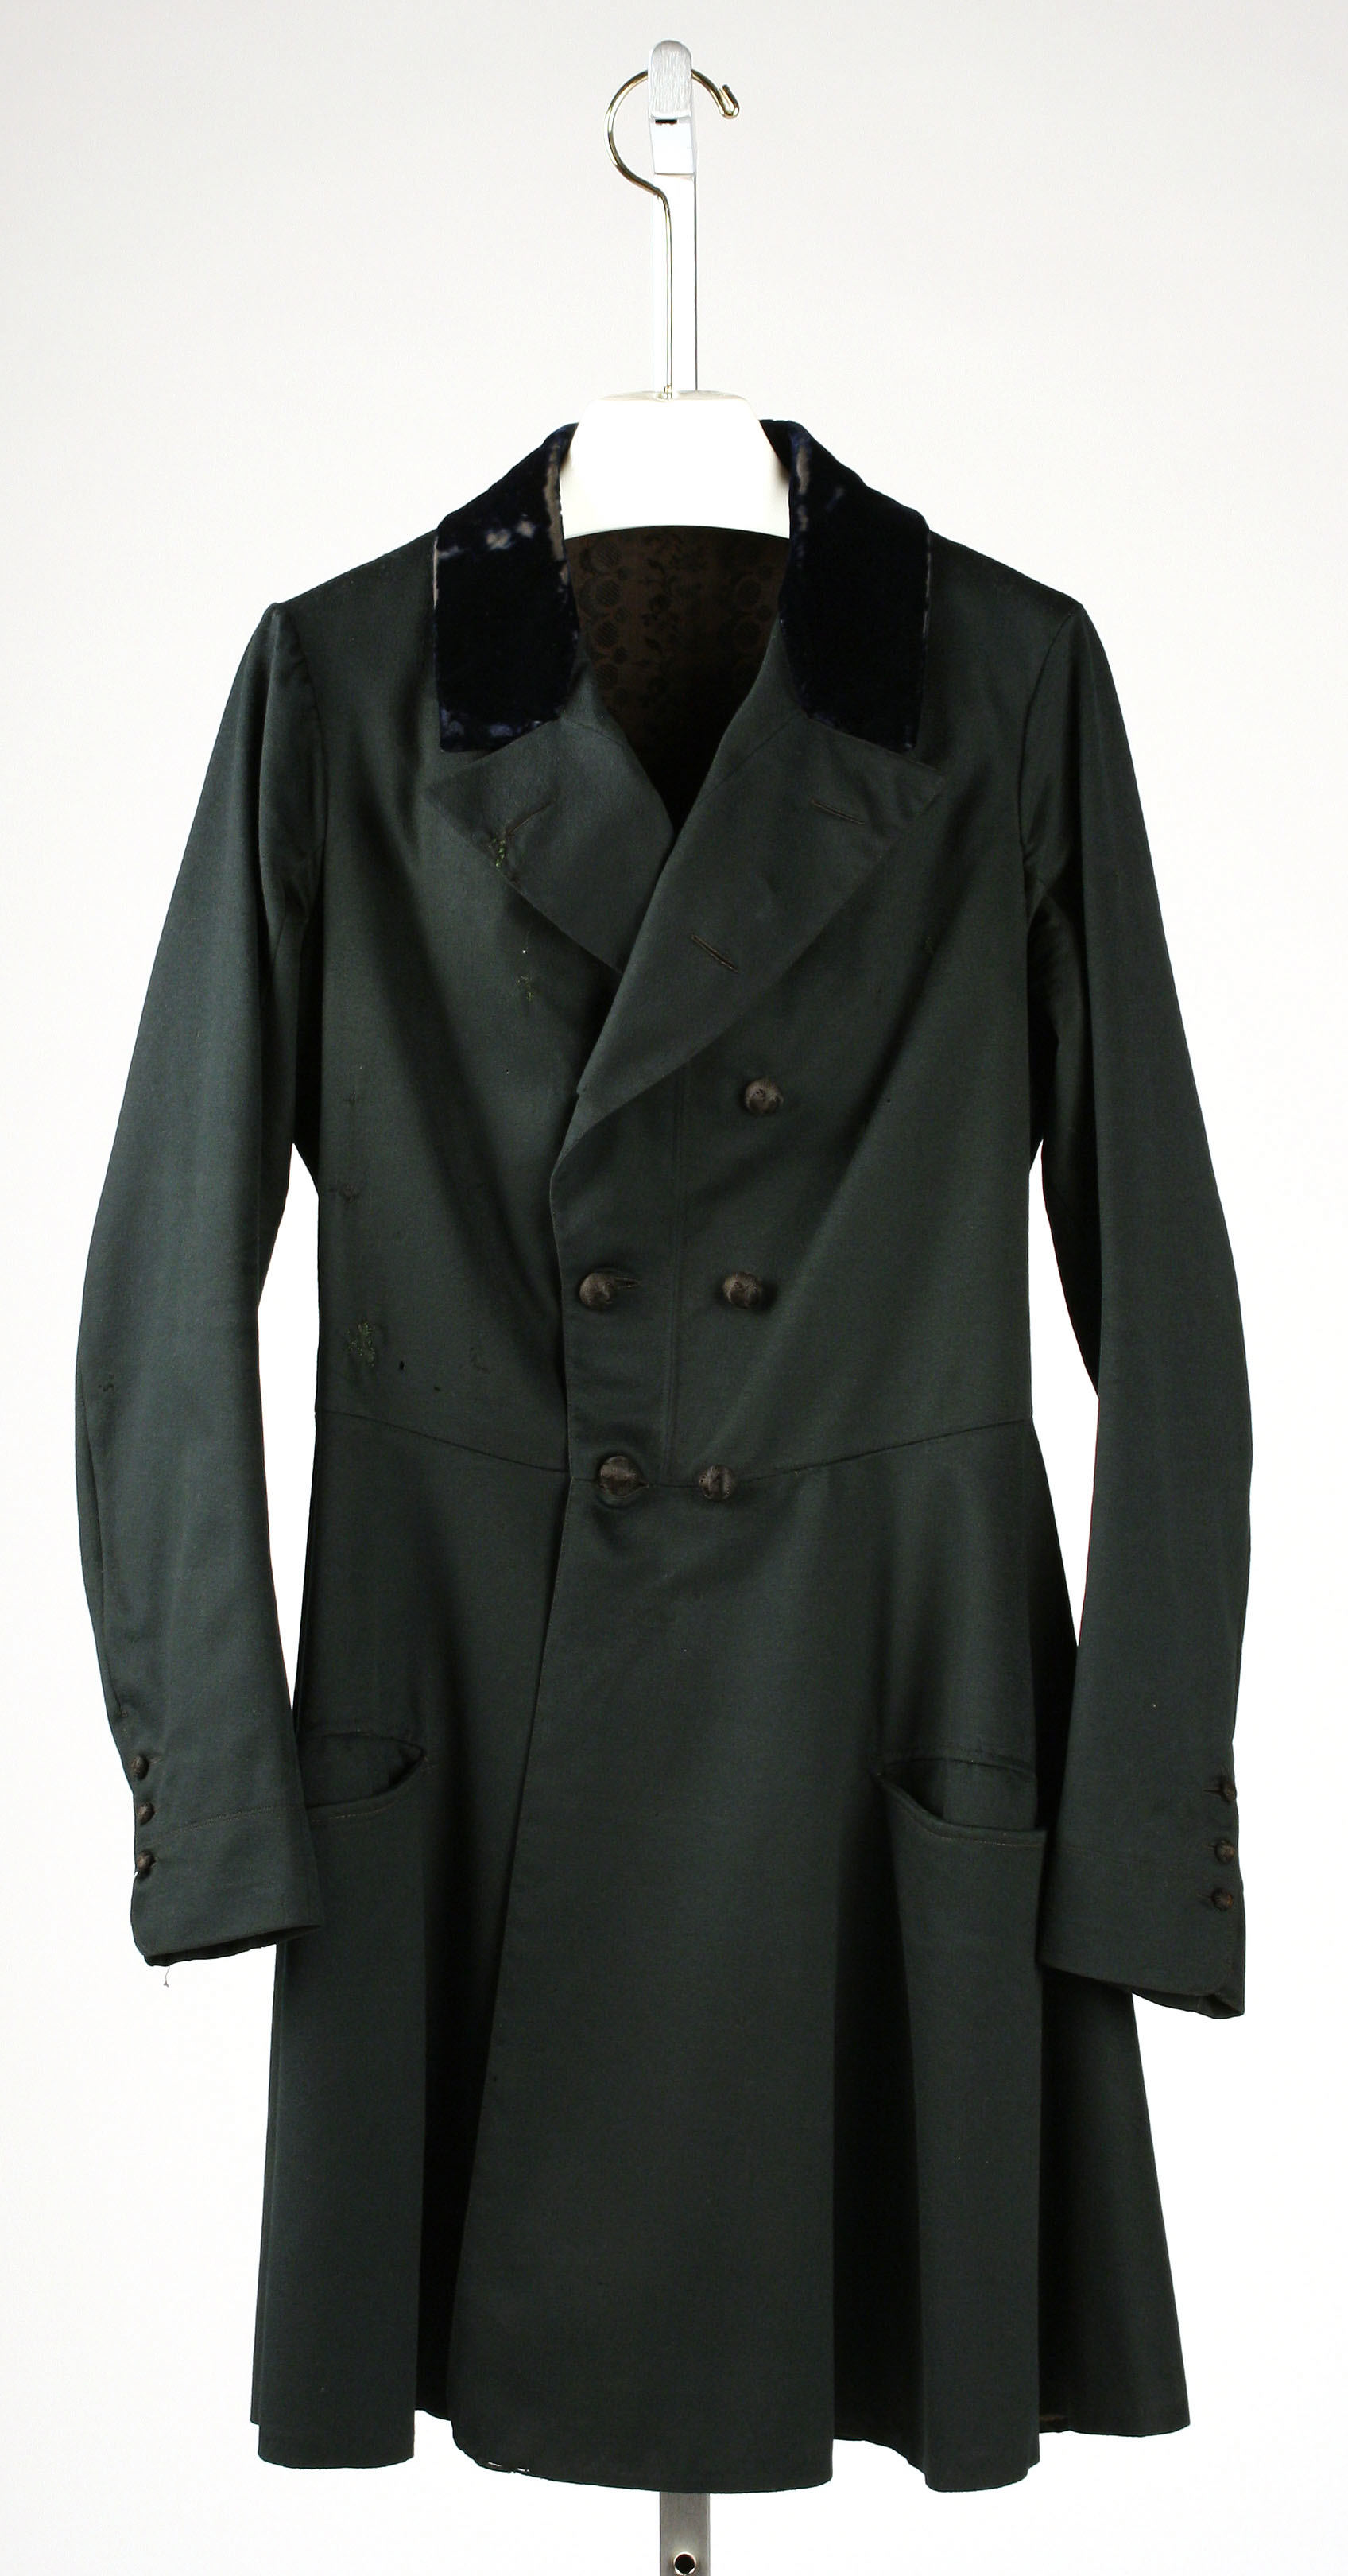 Frock coat | American | The Metropolitan Museum of Art